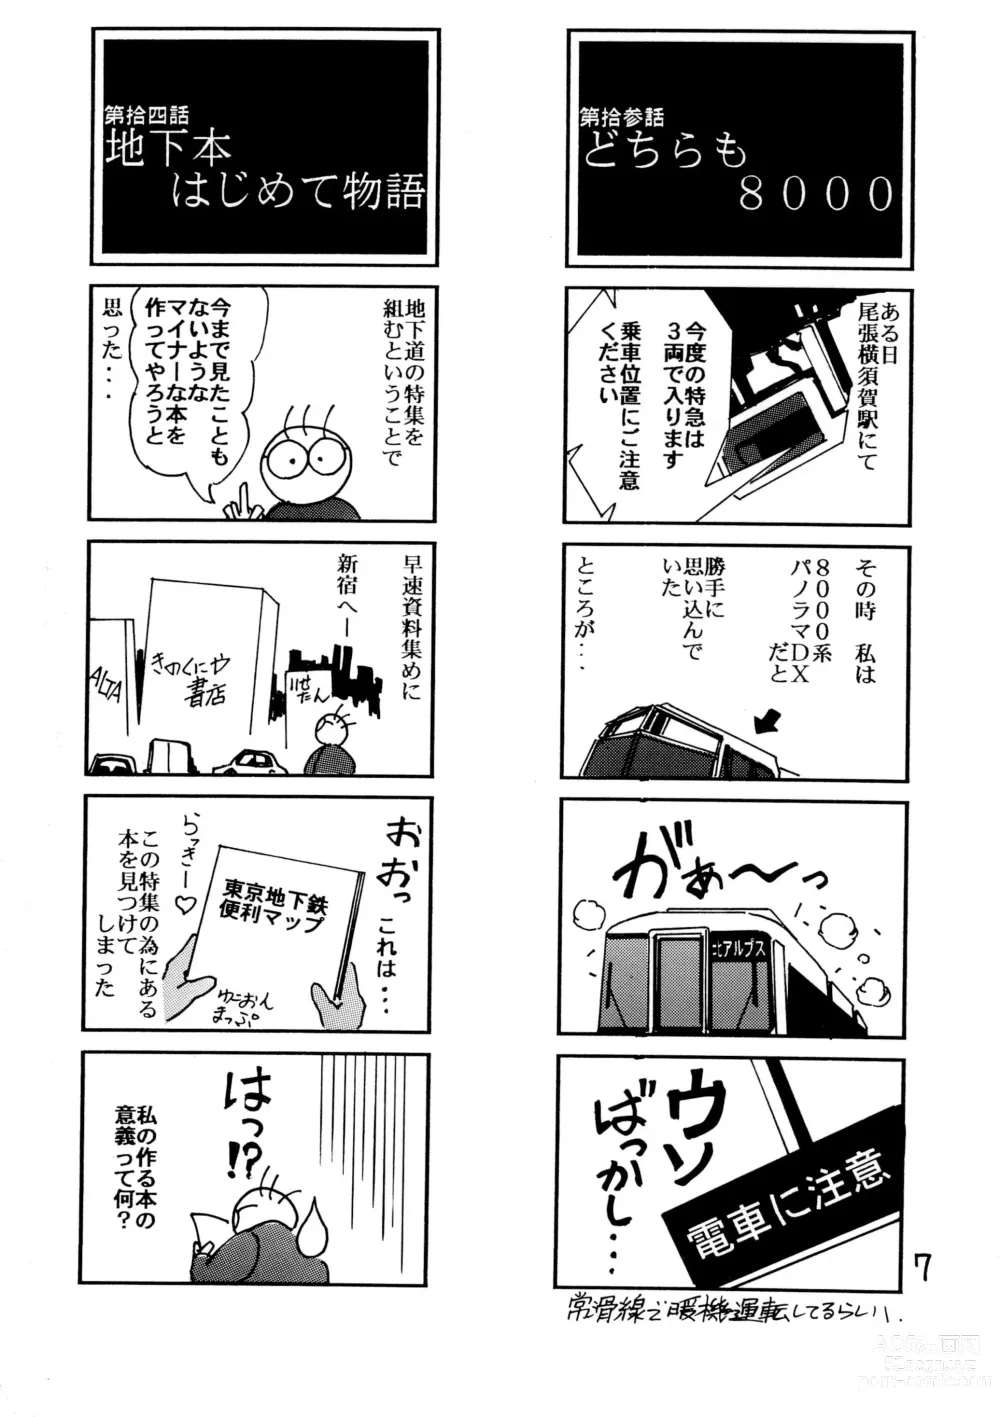 Page 7 of doujinshi Tabi to Chika Do